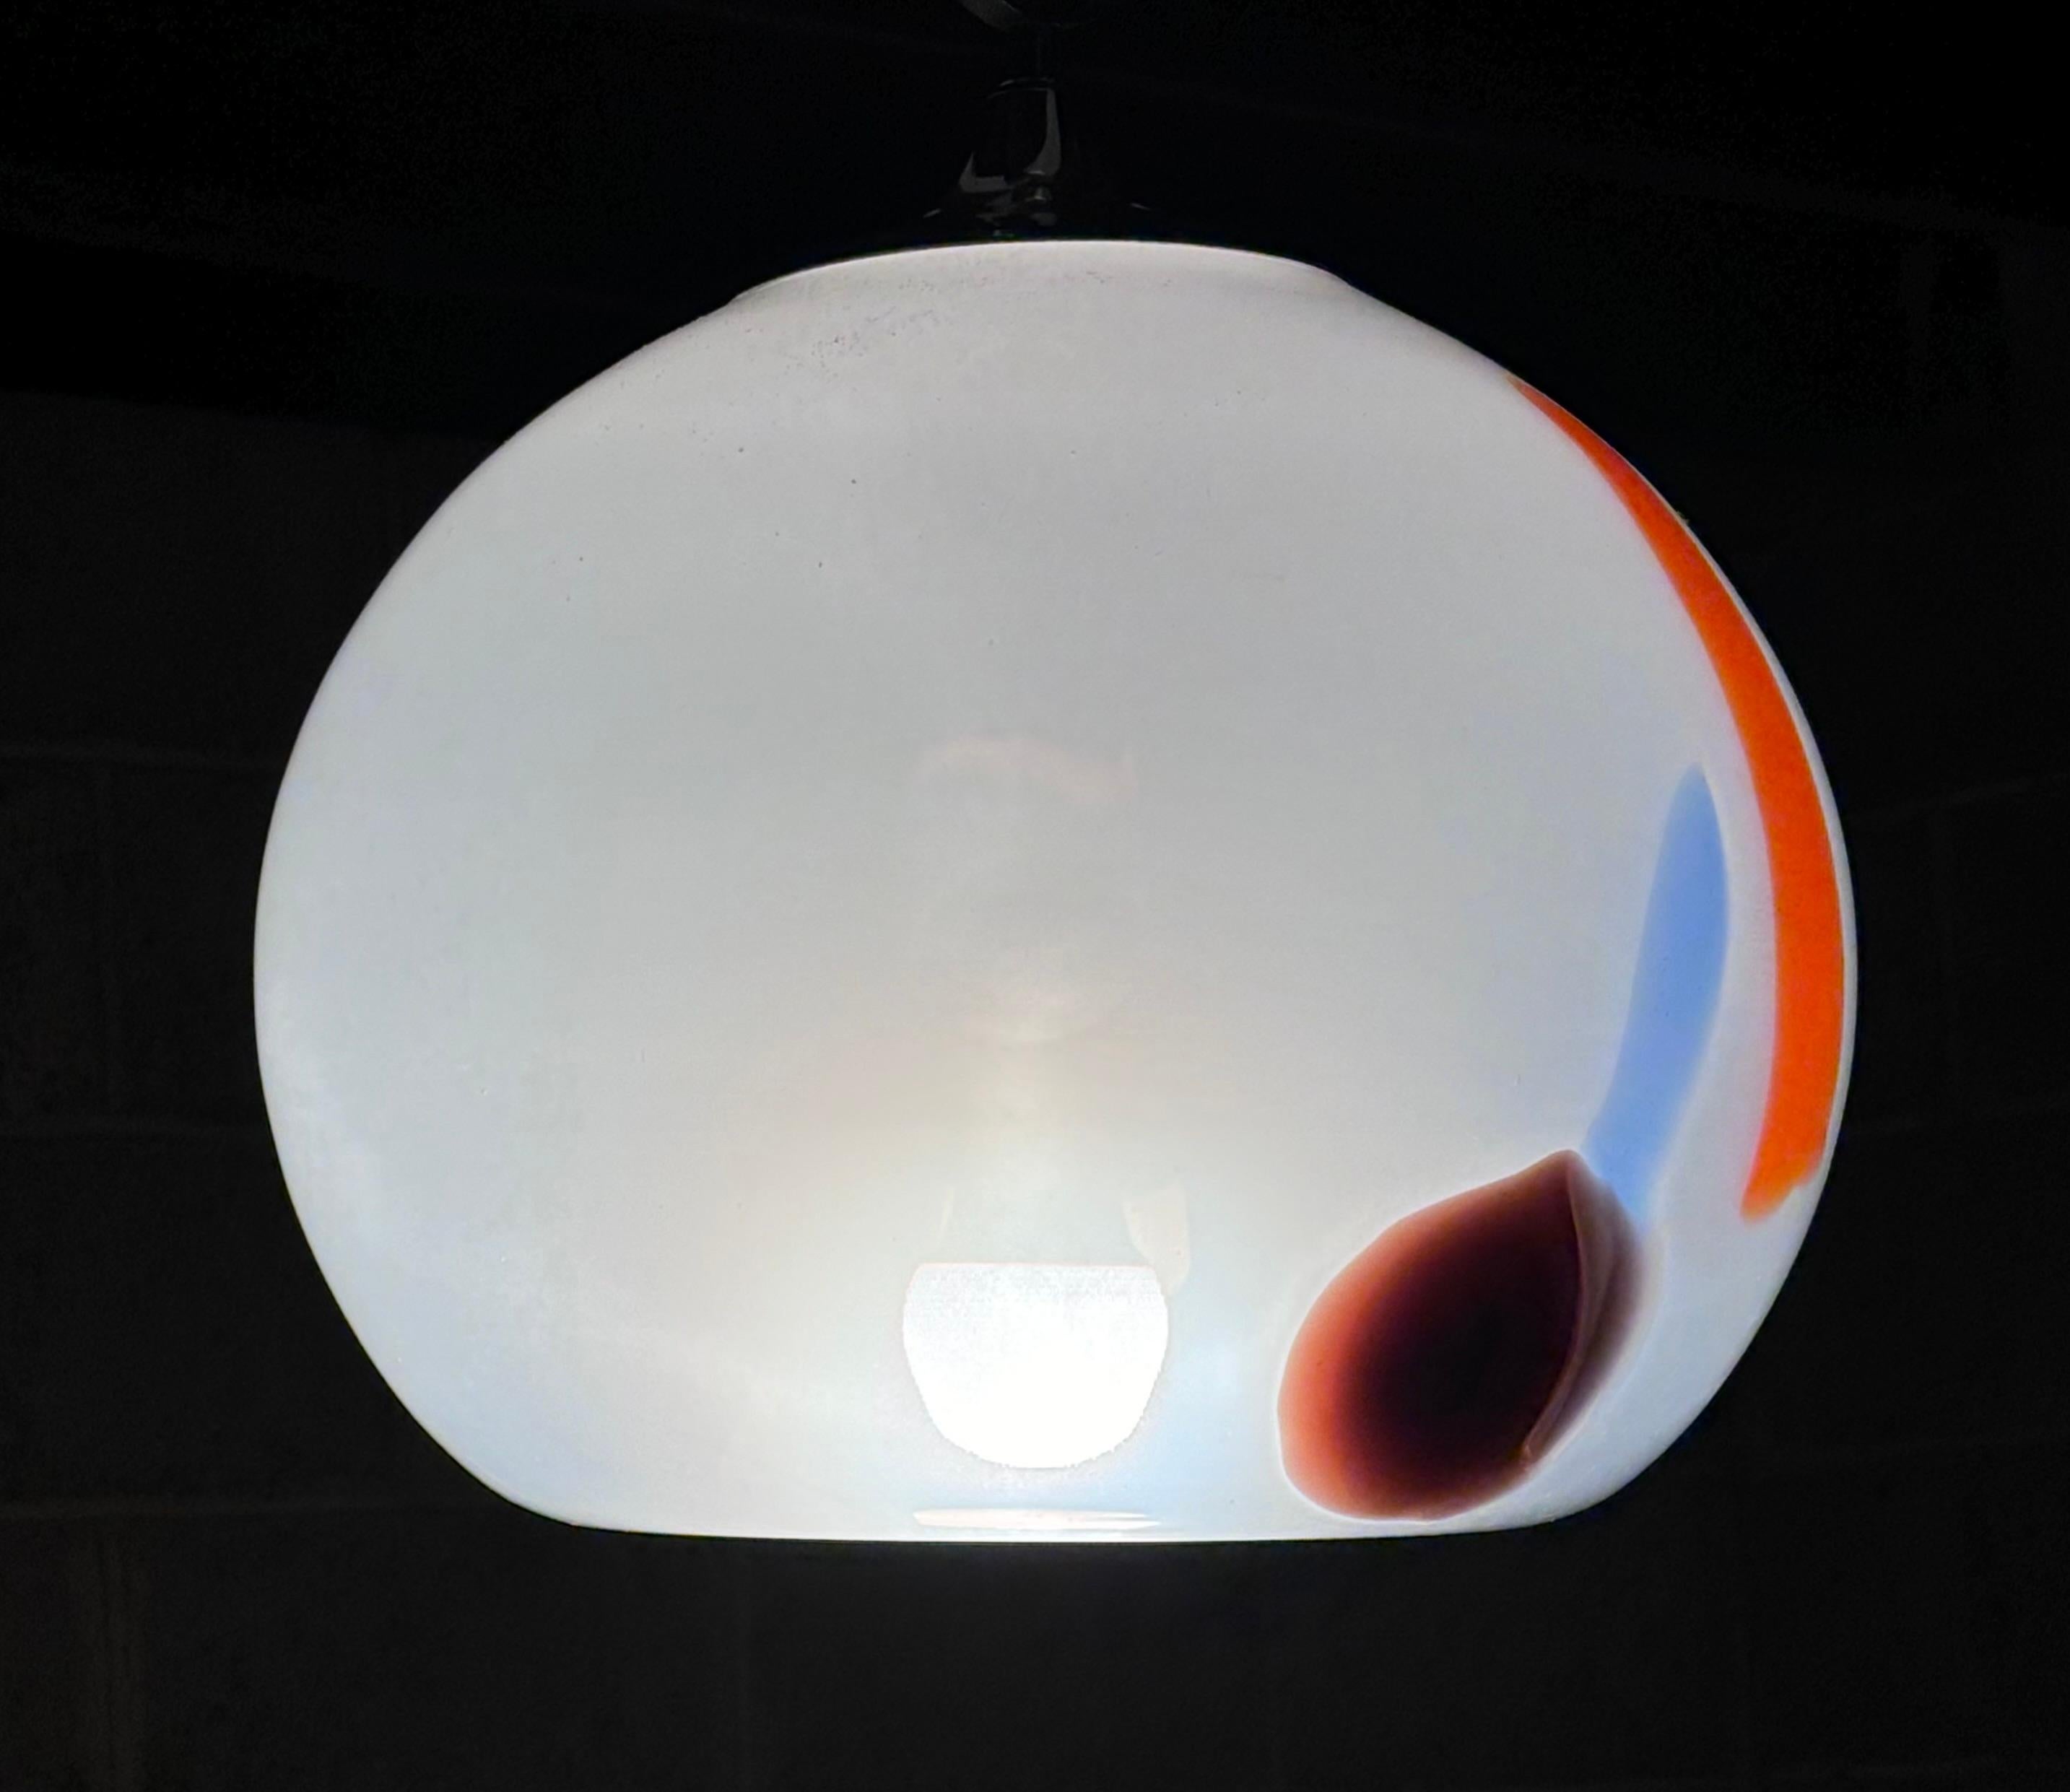 Magnifique suspension de Murano attribuée à Carlo Nason pour Murano. Le corps de la lampe à double paroi est rehaussé d'éclats de couleur selon la technique 